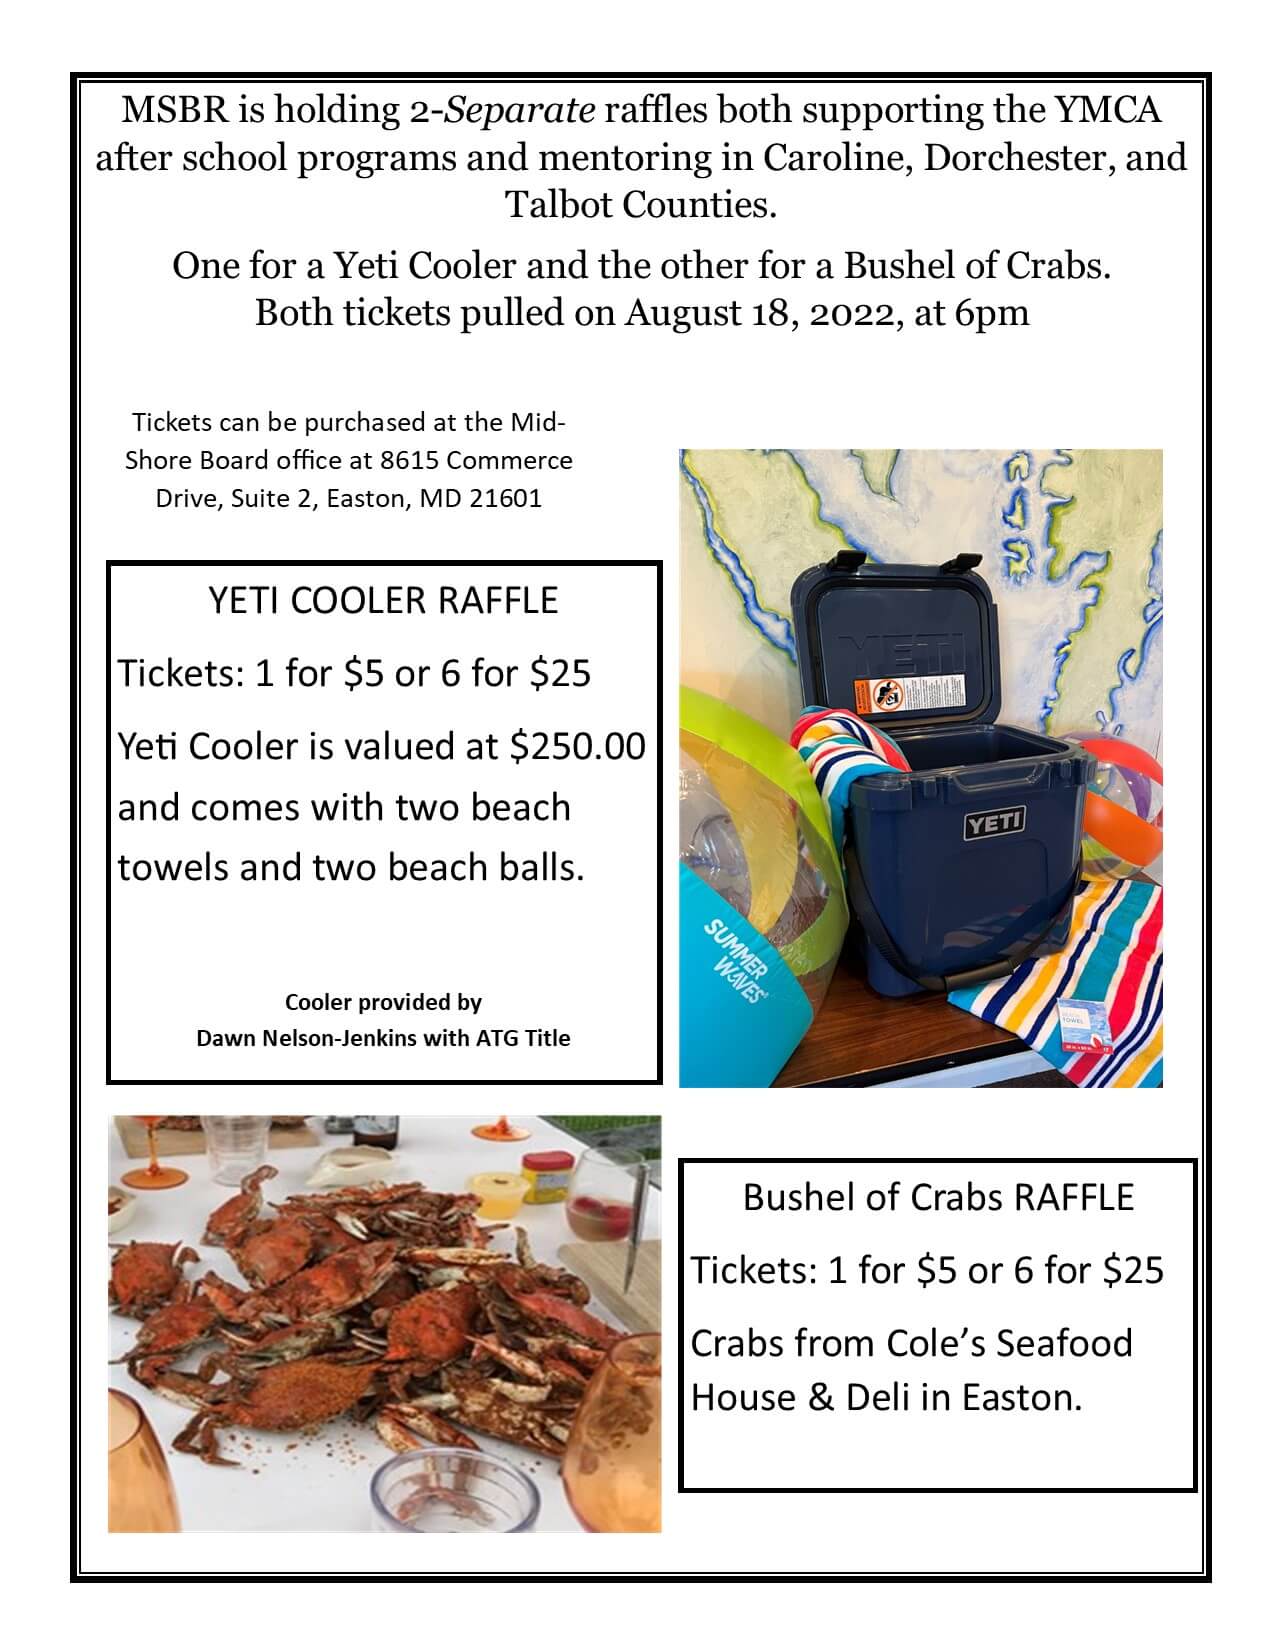 Raffle Bushel Crab-Yeti Cooler